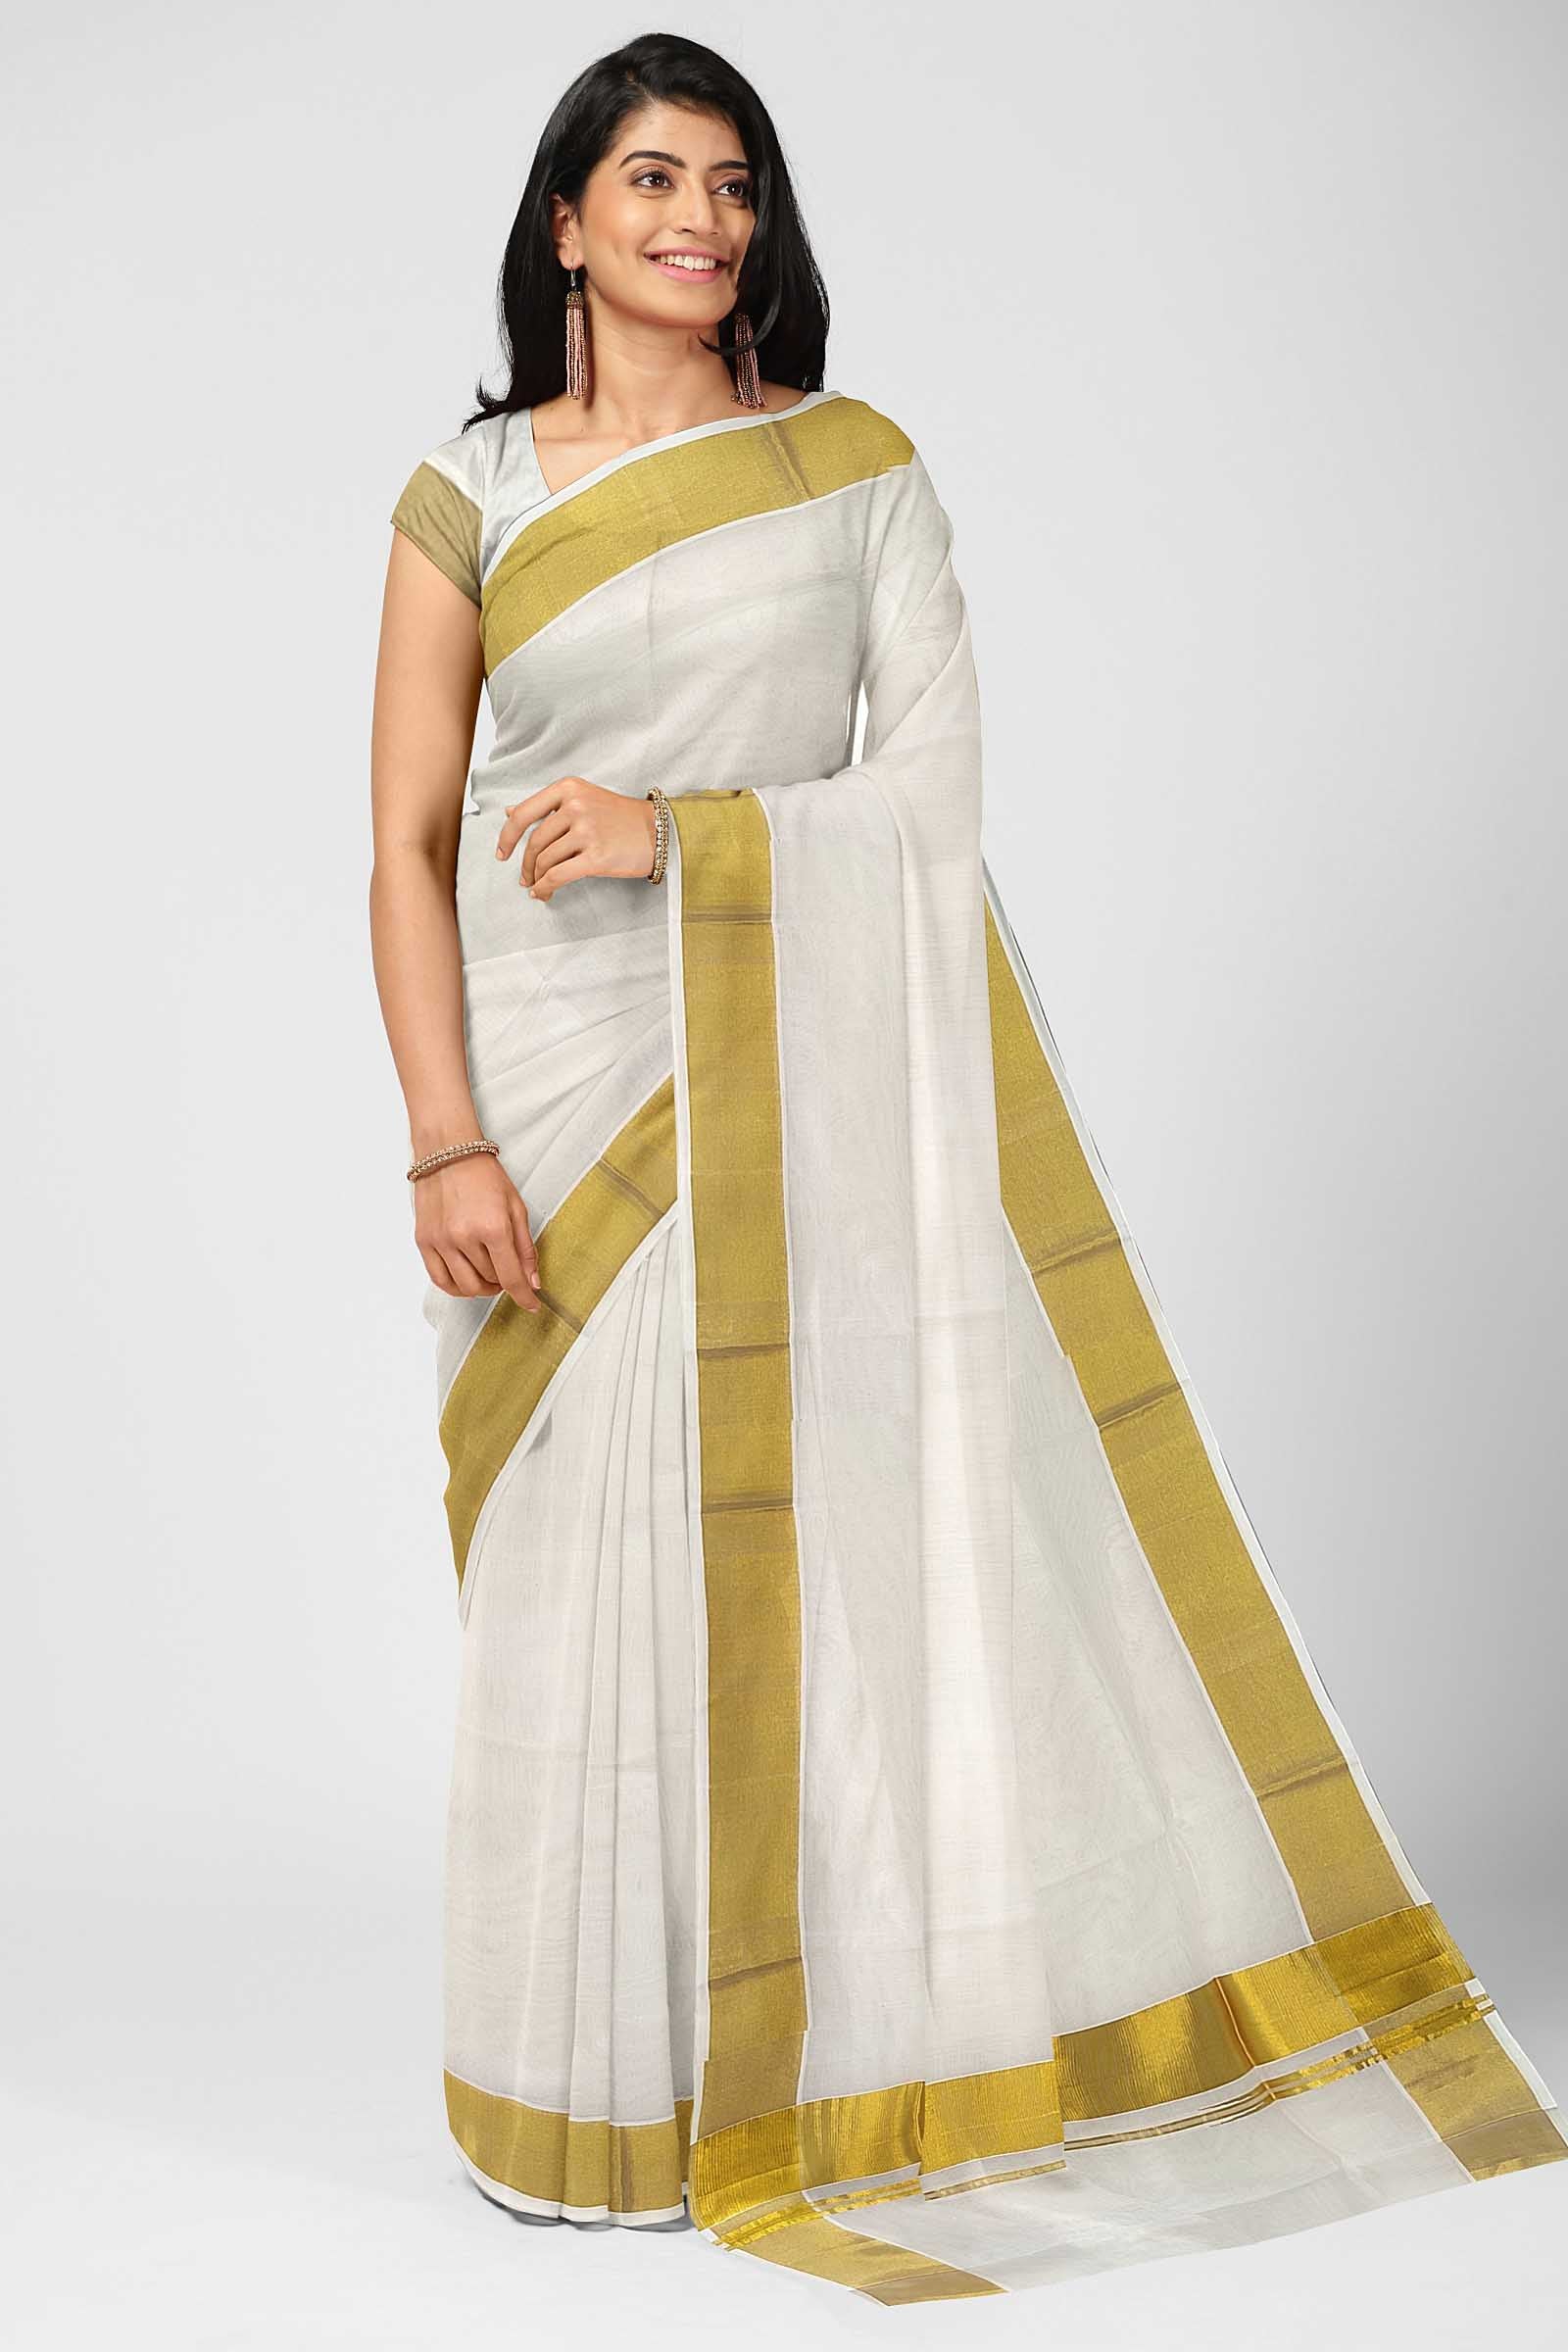 Teejh Sheila White and Gold Kerala Cotton Kasavu Saree